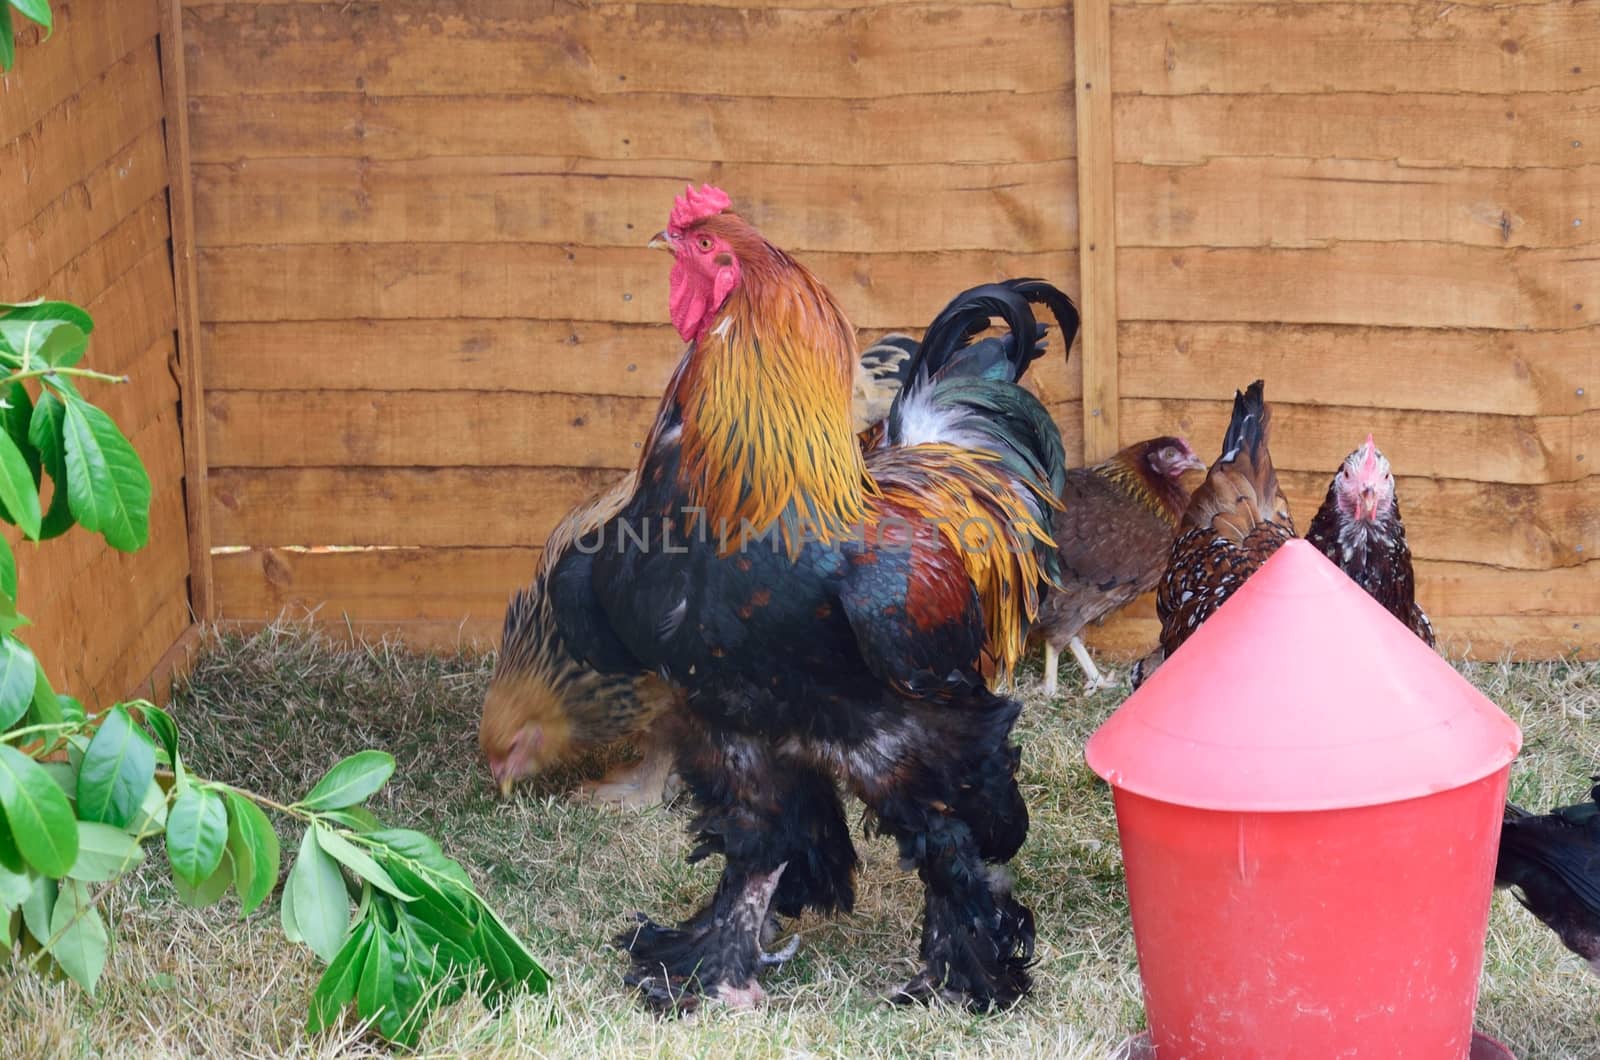 Free range chicken near feeder by pauws99